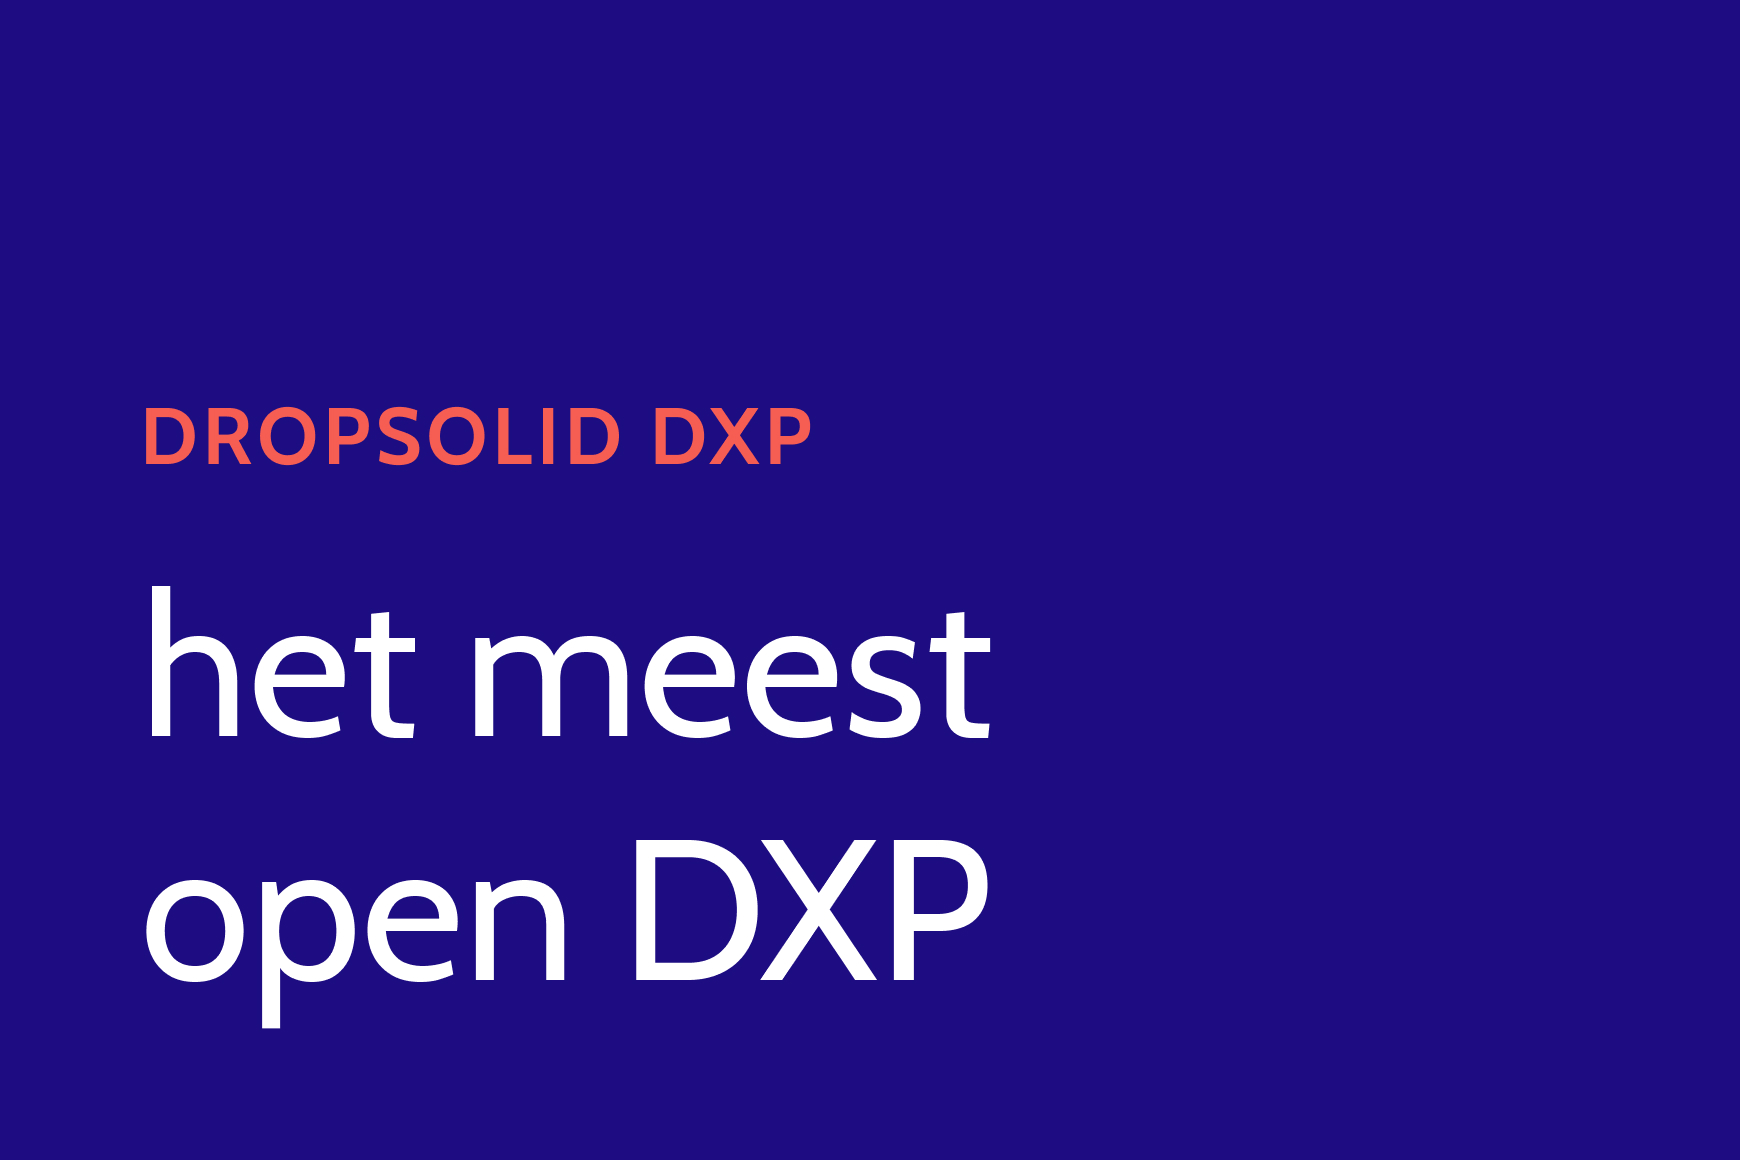 Dropsolid DXP, het meest open DXP